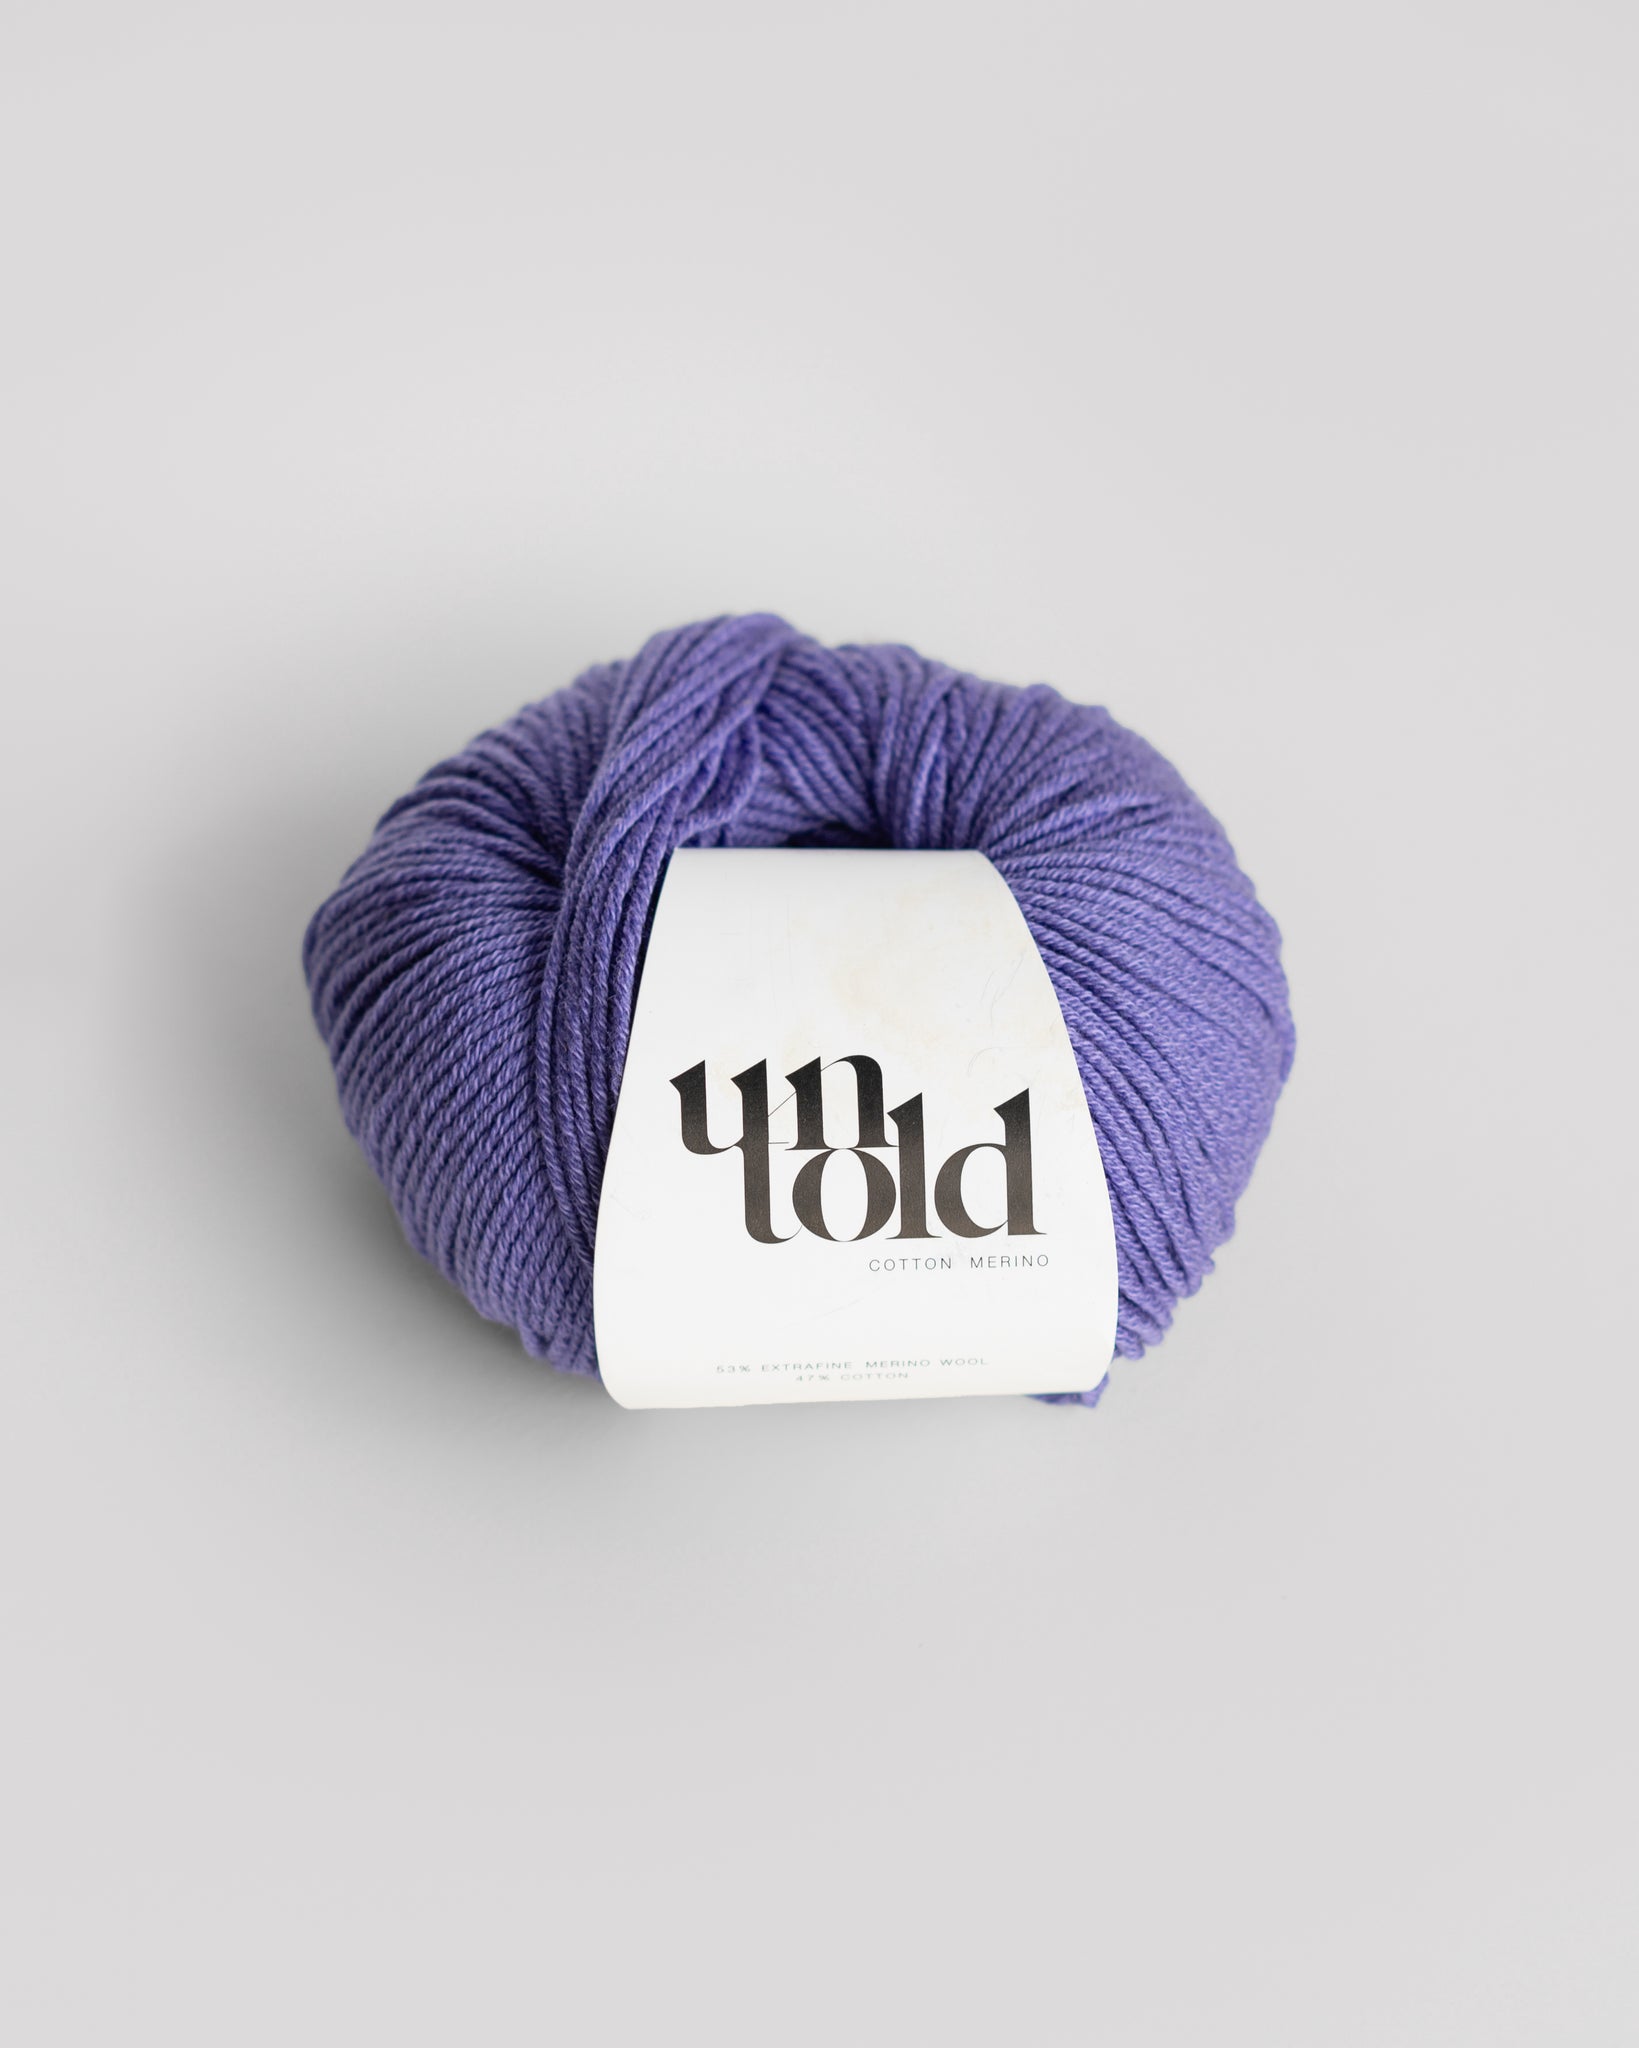 Un-told Cotton merino - Vivid Violet